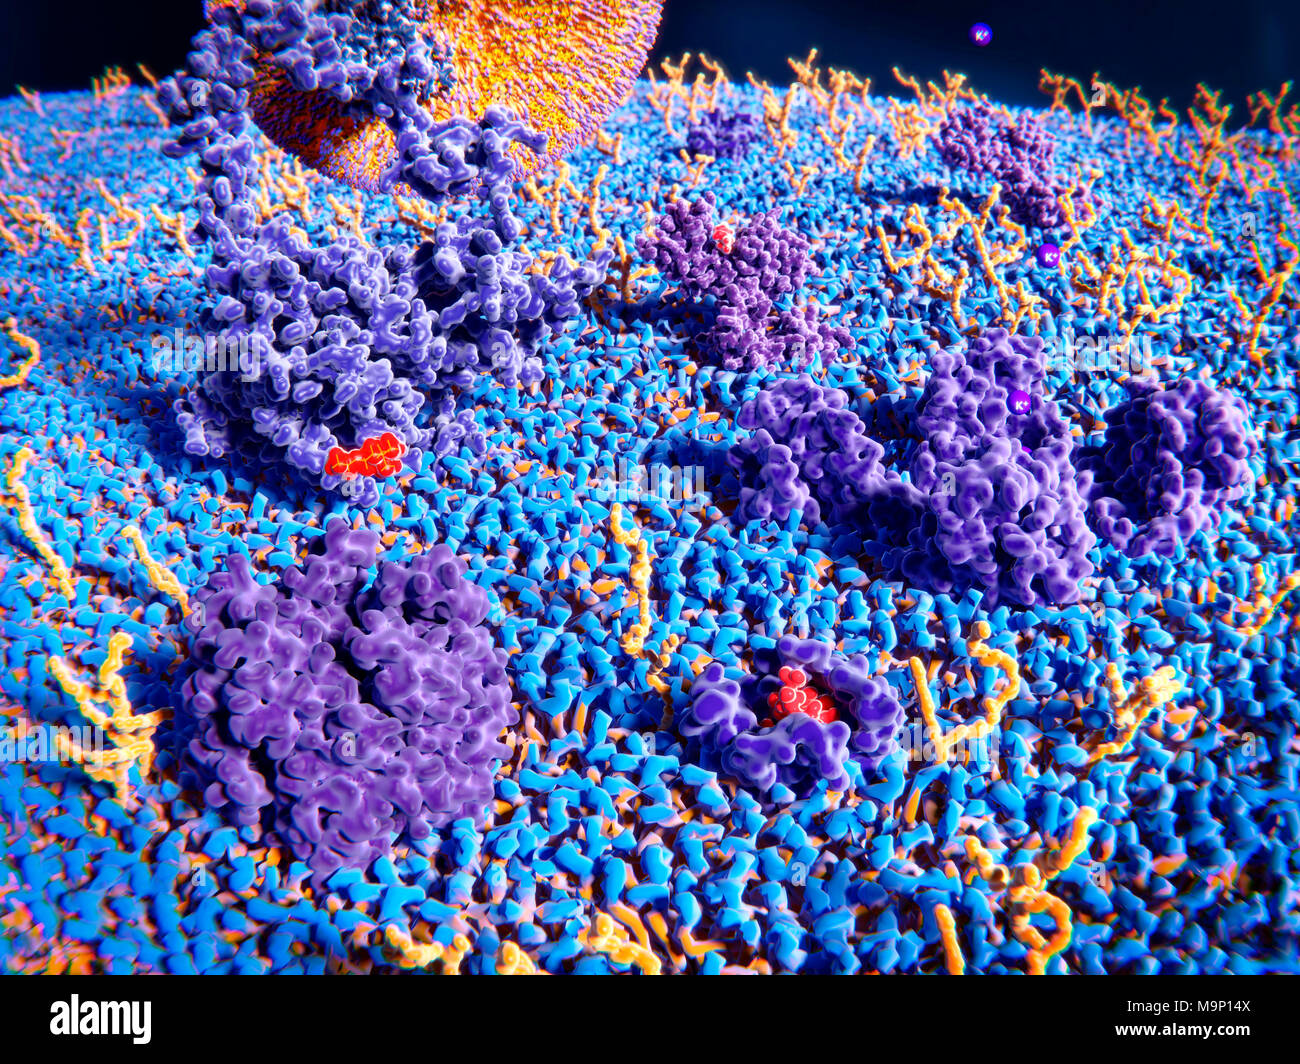 Ilustración de la superficie externa de la membrana celular. Proteínas transmembrana (púrpura) y glicolípidos (amarillo) sobresale de la superficie de la membrana. En la parte superior izquierda es un LDL (lipoproteína de baja densidad) enlazado a un receptor de LDL (partículas grandes, naranja y violeta). A la derecha del receptor de LDL es un canal de histamina, enlazar una molécula de histamina. A la derecha está el centro de un canal de potasio con el potasio (K+) iones. En la parte delantera izquierda es una molécula de acetilcolina y anti-receptor de acetilcolina y en la parte delantera derecha es un receptor opioide delta enlazado con una molécula de endorfinas. Foto de stock